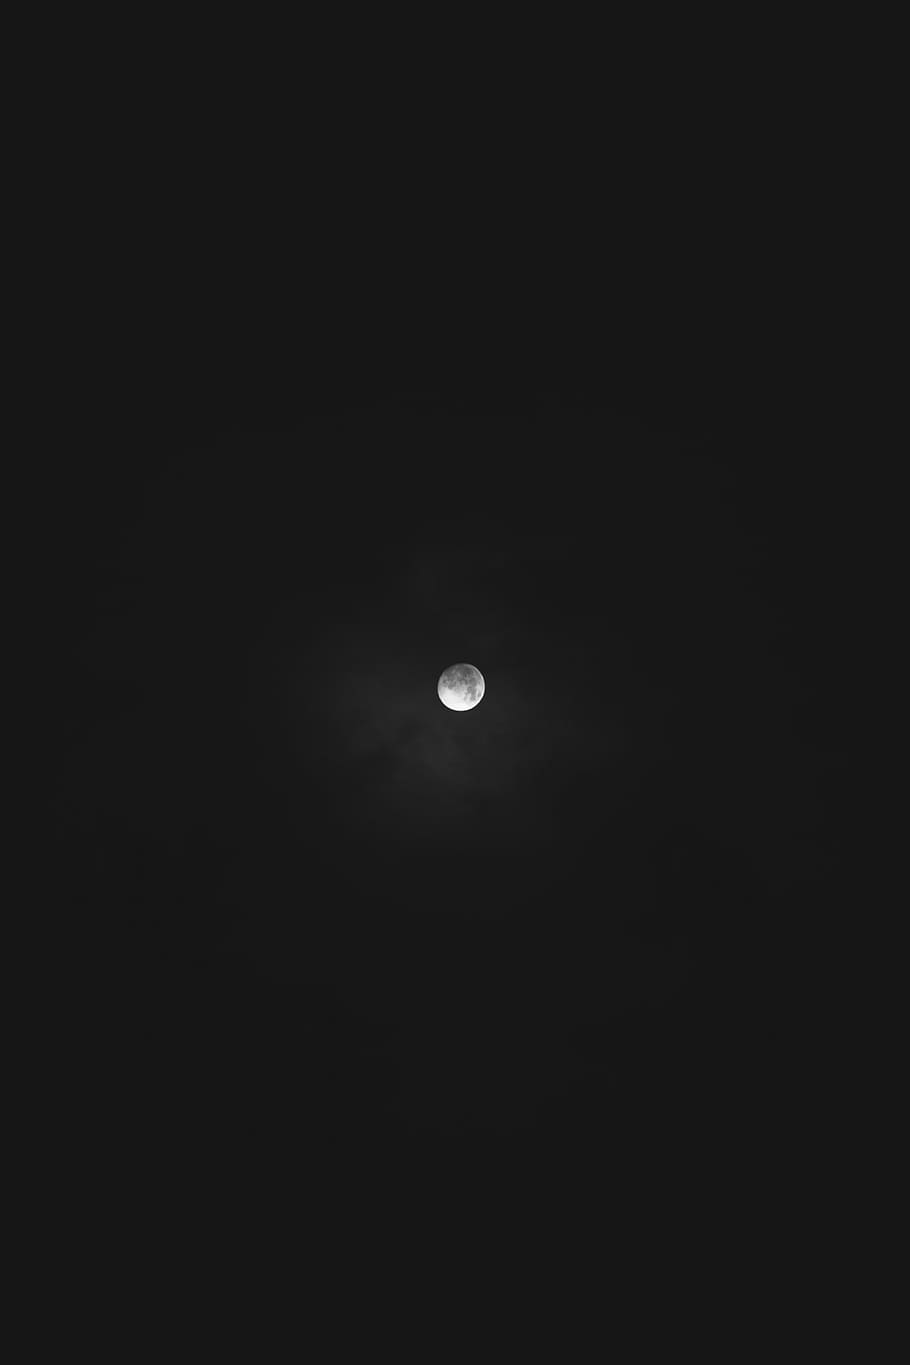 bajo, ángulo de fotografía, luna, completo, oscuro, noche, cielo, astronomía, copia espacio, ninguna gente